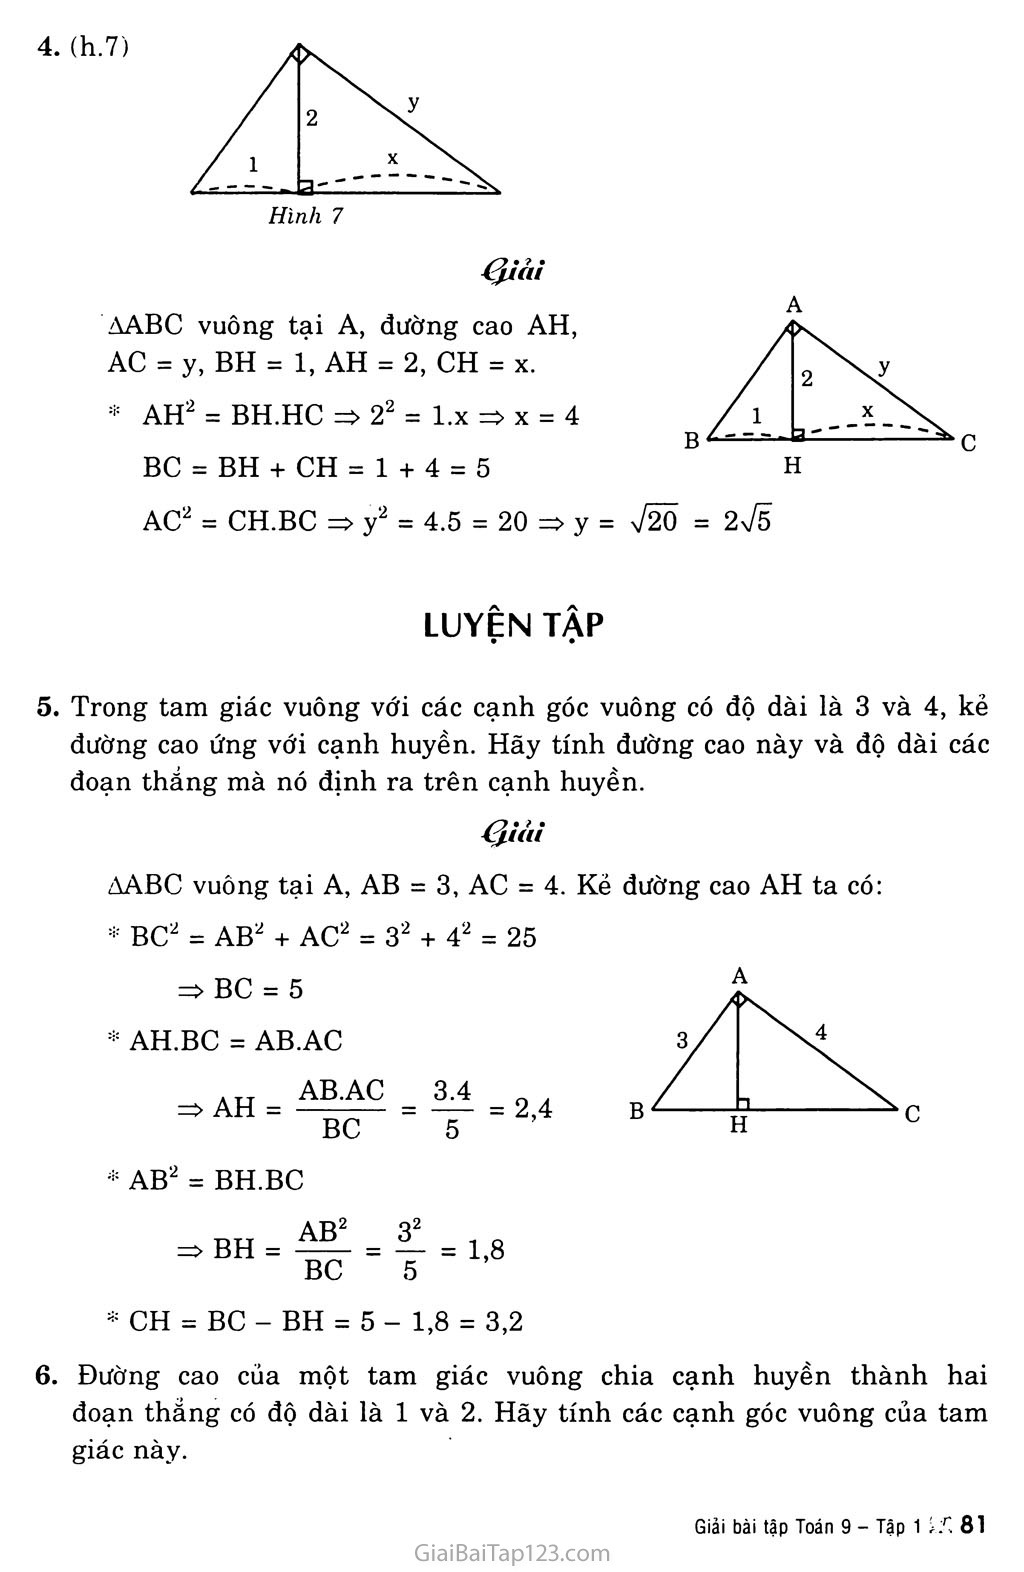 Bài 1. Một số hệ thức về cạnh và đường cao trong tam giác vuông trang 3